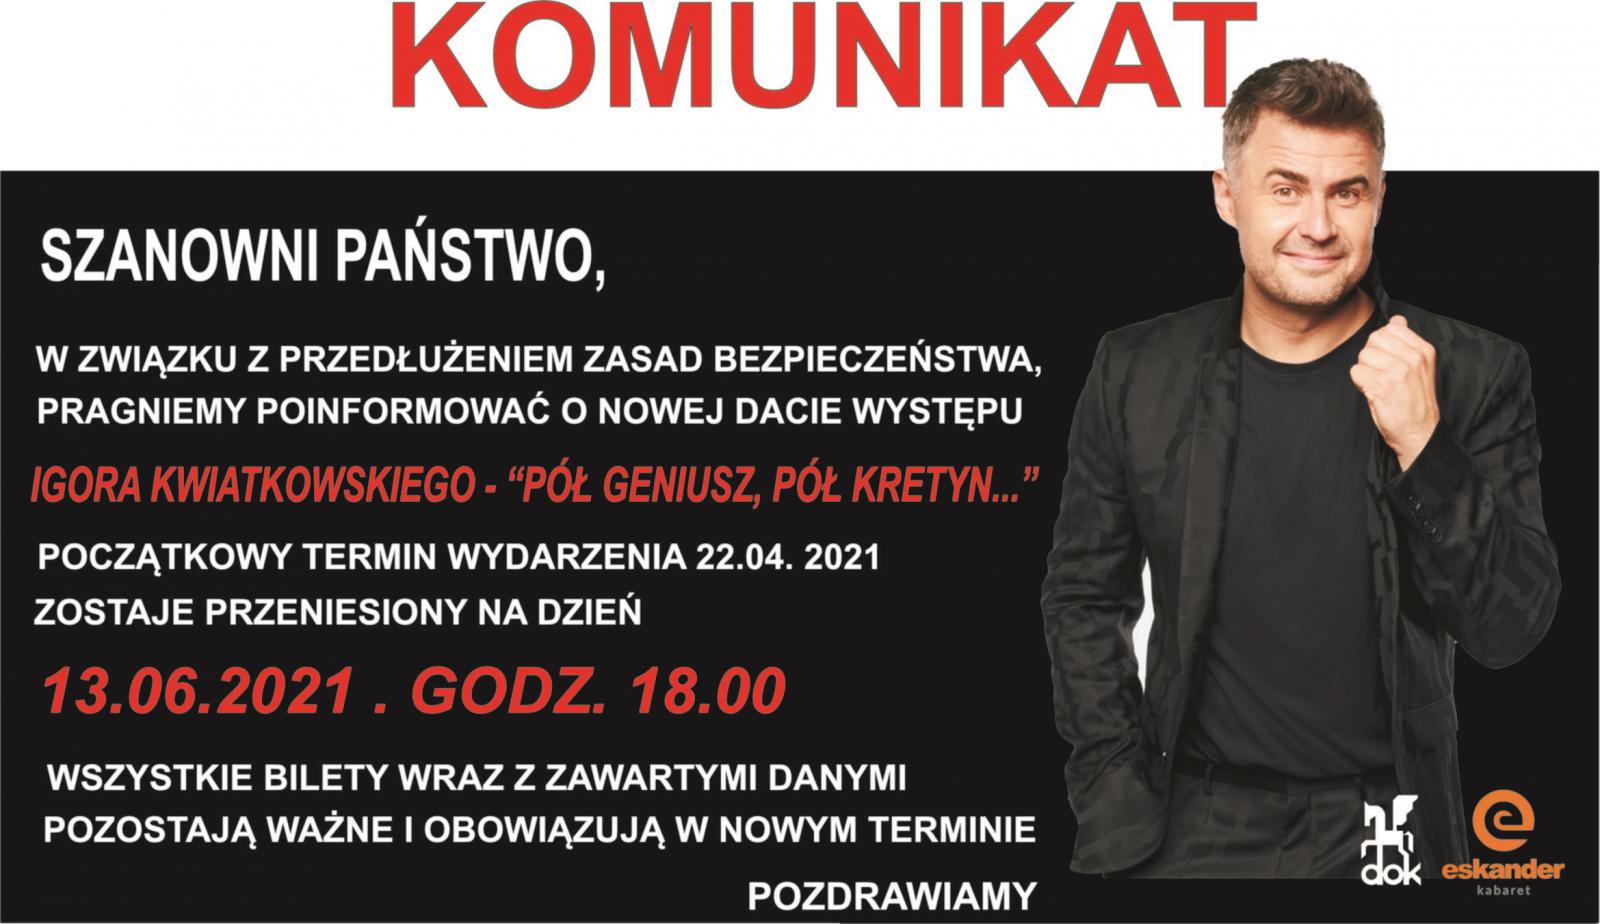 Termin występu Igora Kwiatkowskiego z 22 kwietnia został przesunięty na 13 czerwca na godz. 18.00. Bilety kupione na kwietniowy występ  zachowują ważność